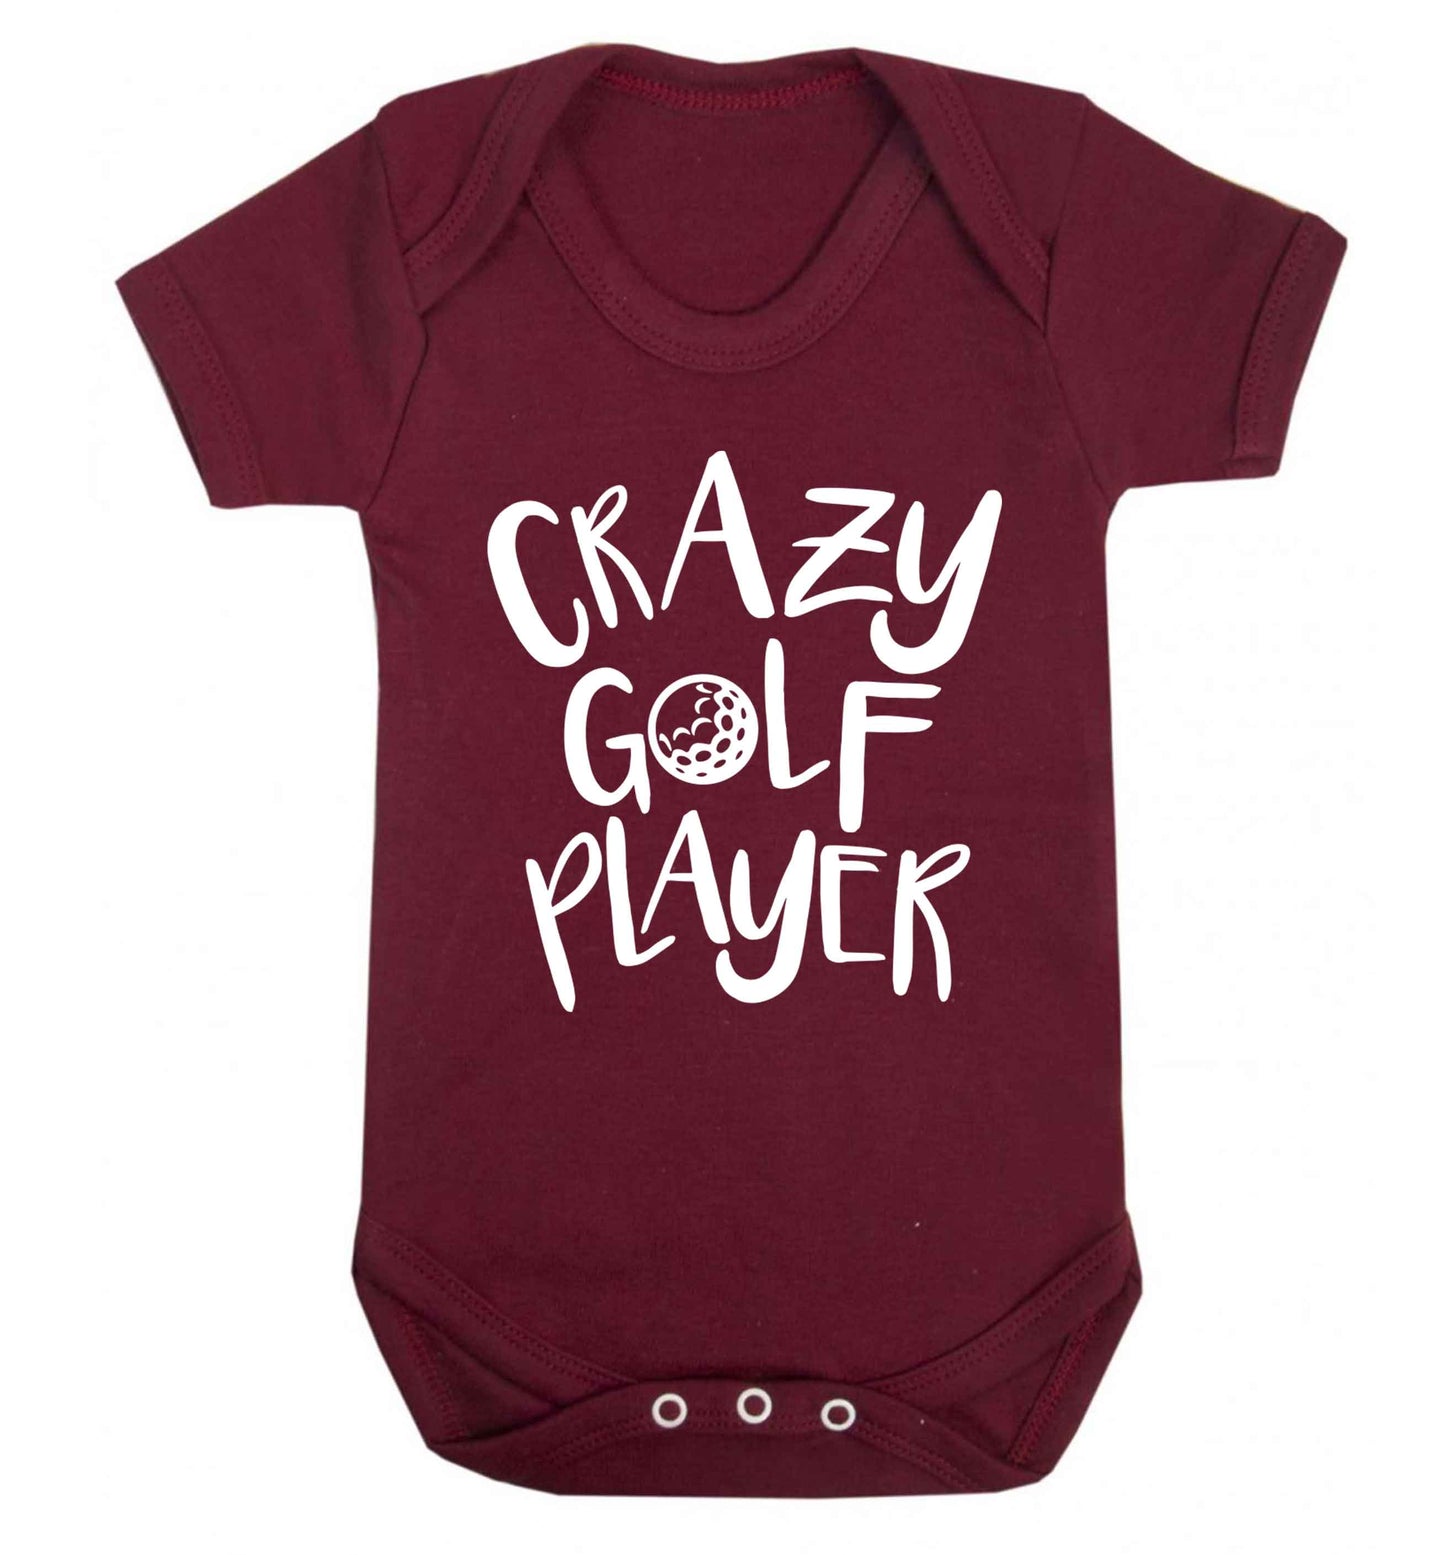 Crazy golf player Baby Vest maroon 18-24 months